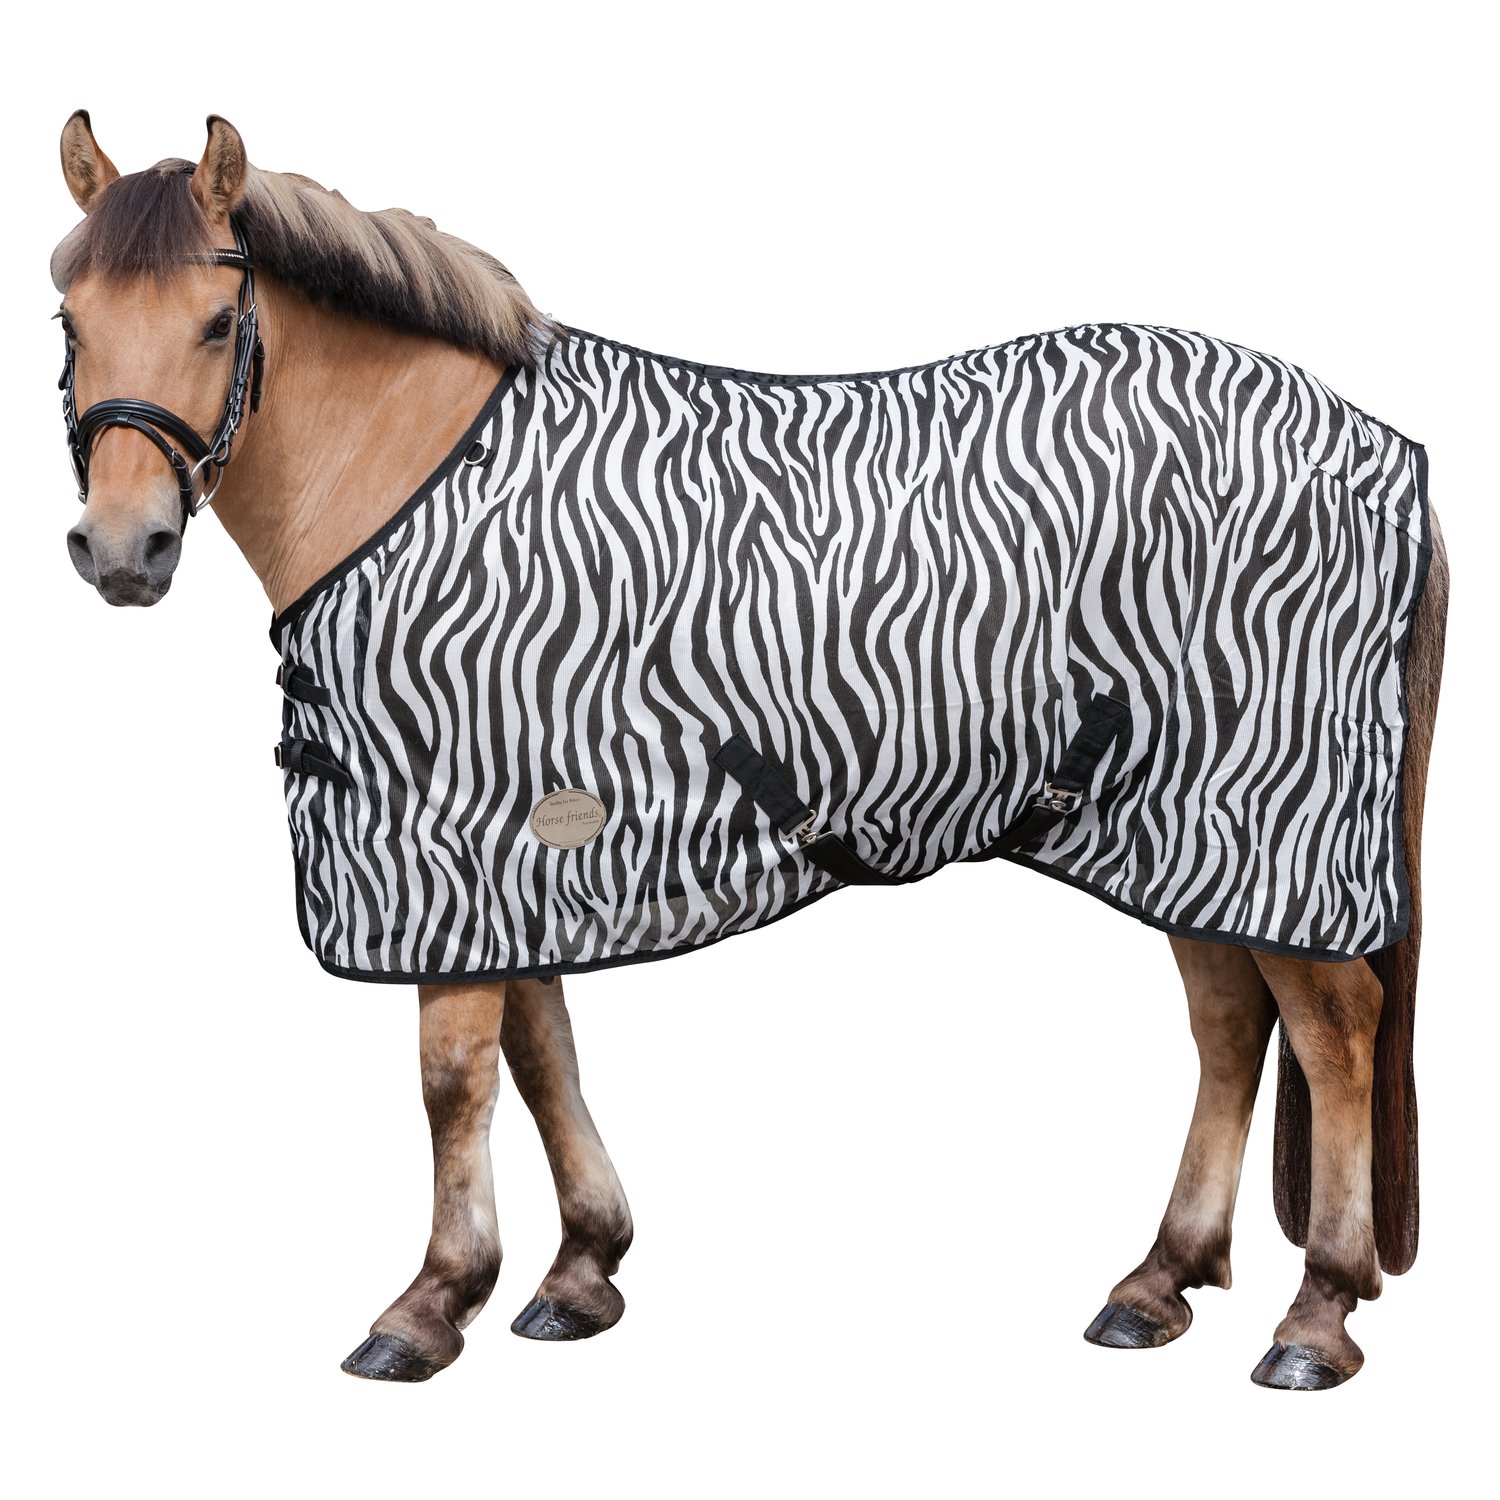 Horse-friends Fliegendecke mit Zebra-Muster zebra | 125 cm